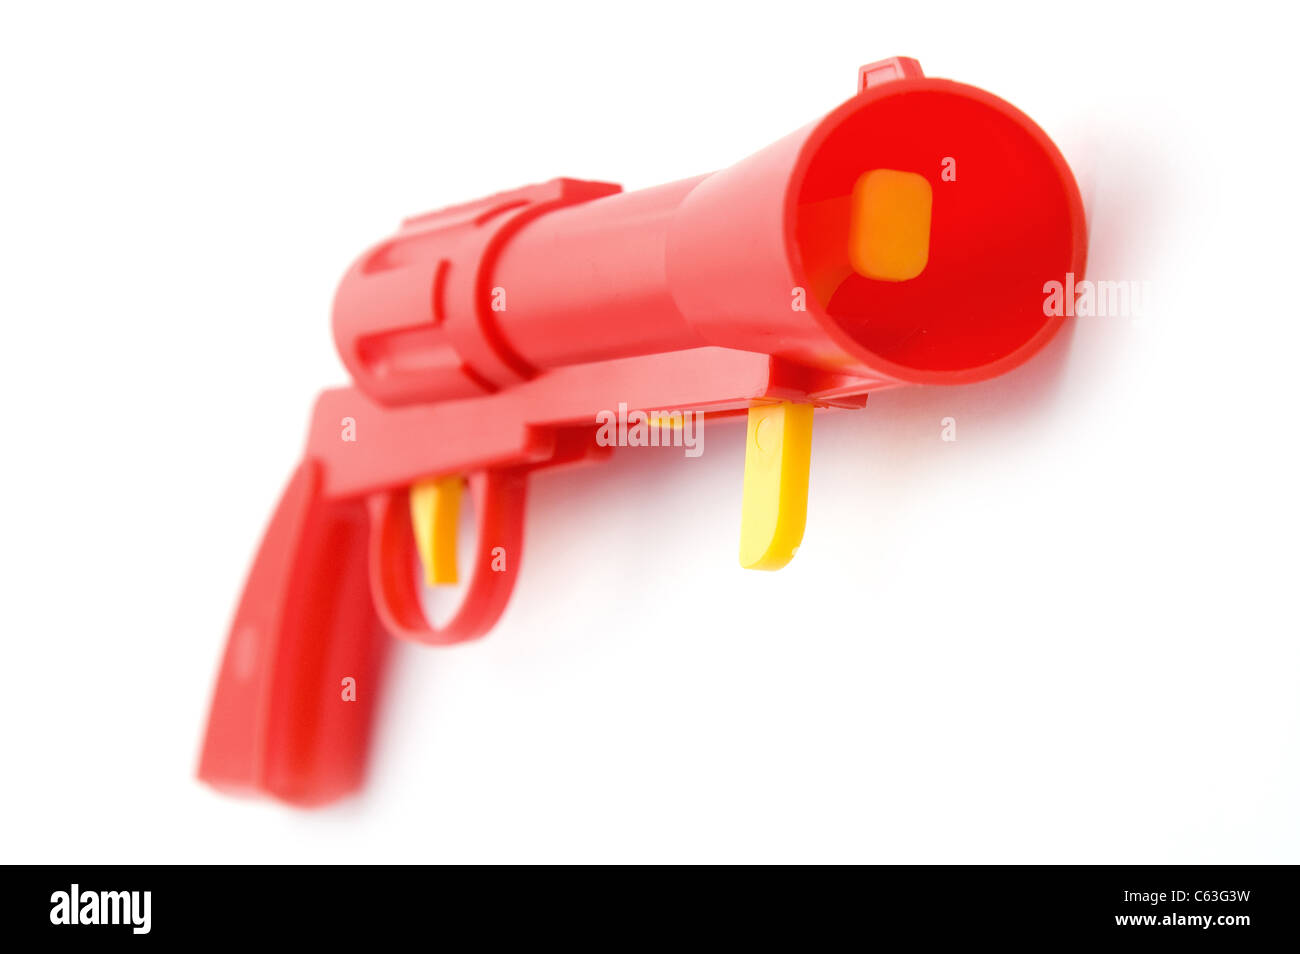 Objet sur blanc - pistolet jouet close up Banque D'Images